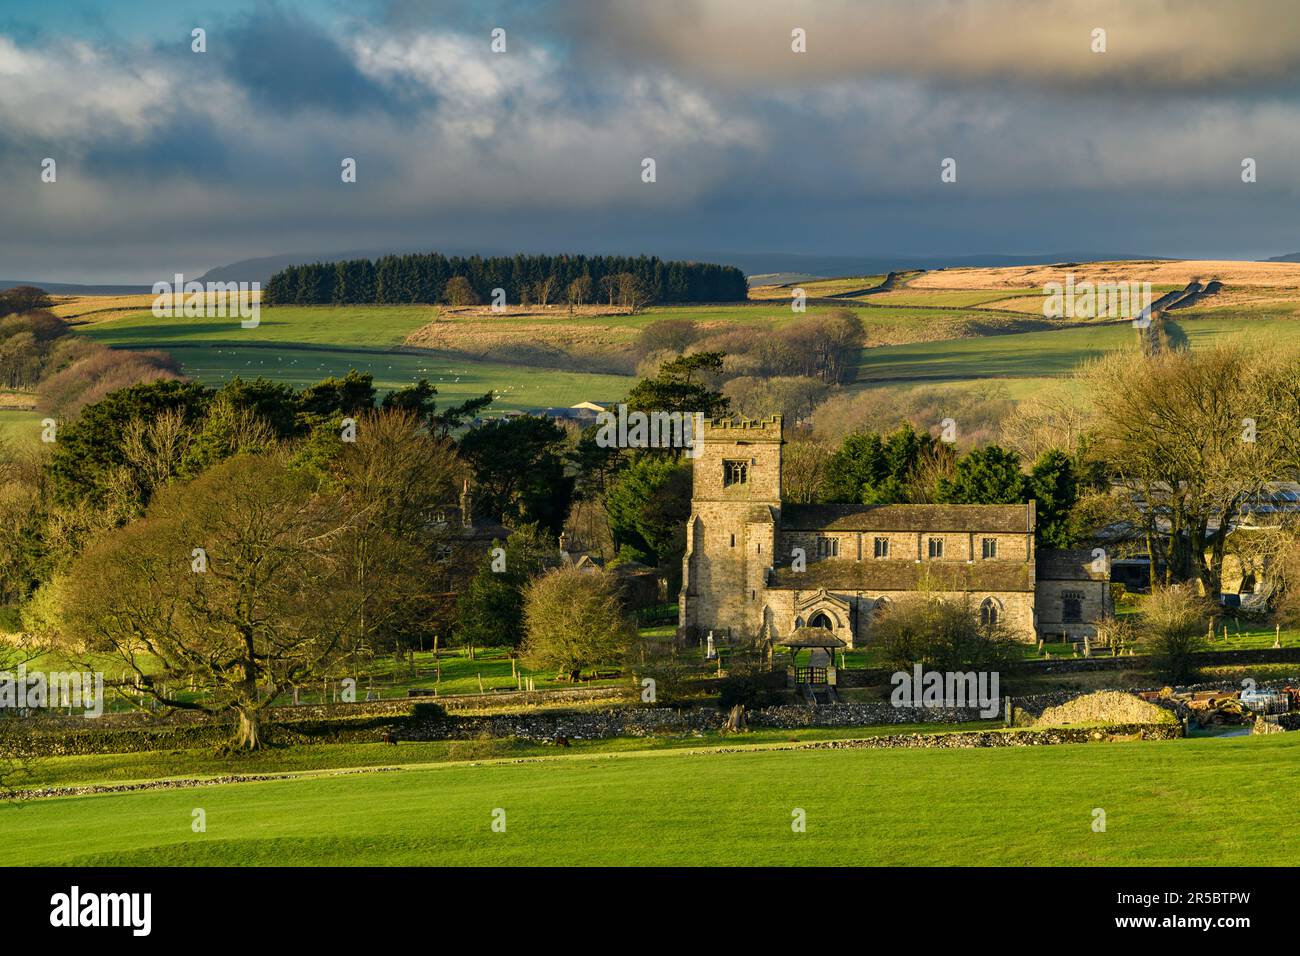 Bella vista sulla vecchia chiesa in pietra (villaggio rurale di Dales, luce serale e luce solare su terra e campi, brughiere di altipiano) - Rylstone, North Yorkshire, Inghilterra UK Foto Stock